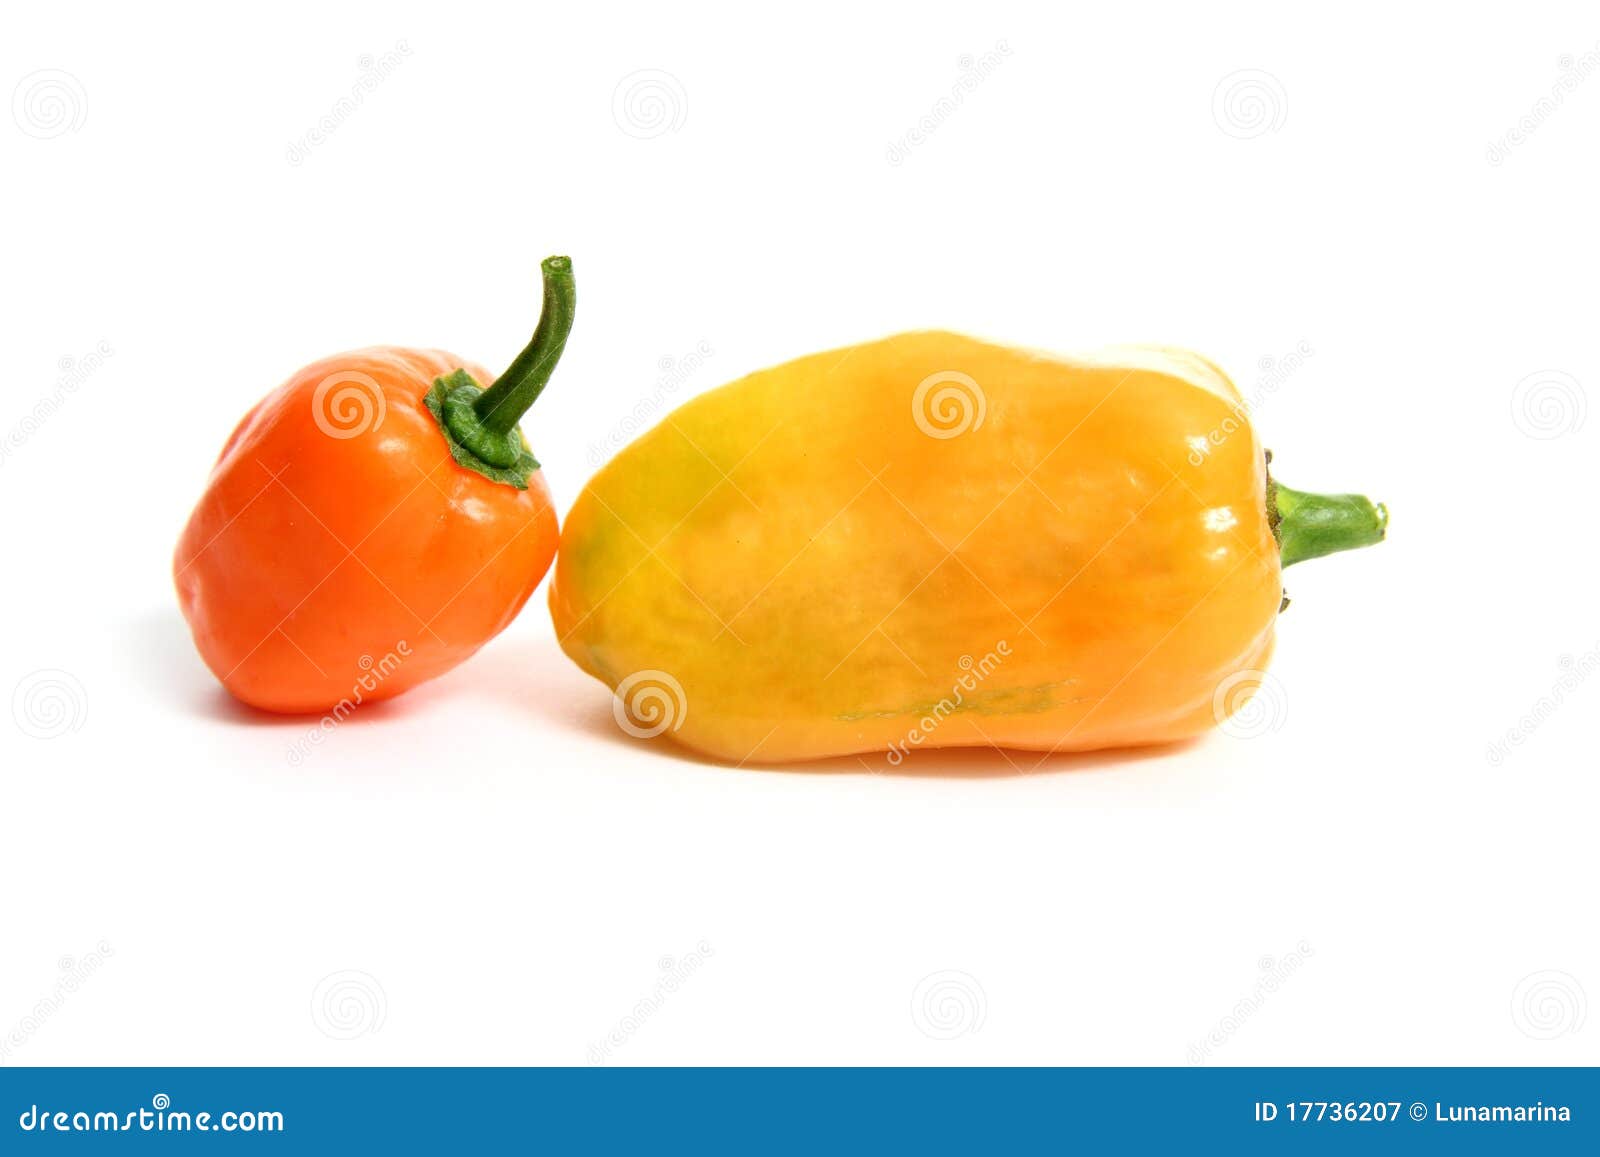 habanero capsicum chili hottest pepper